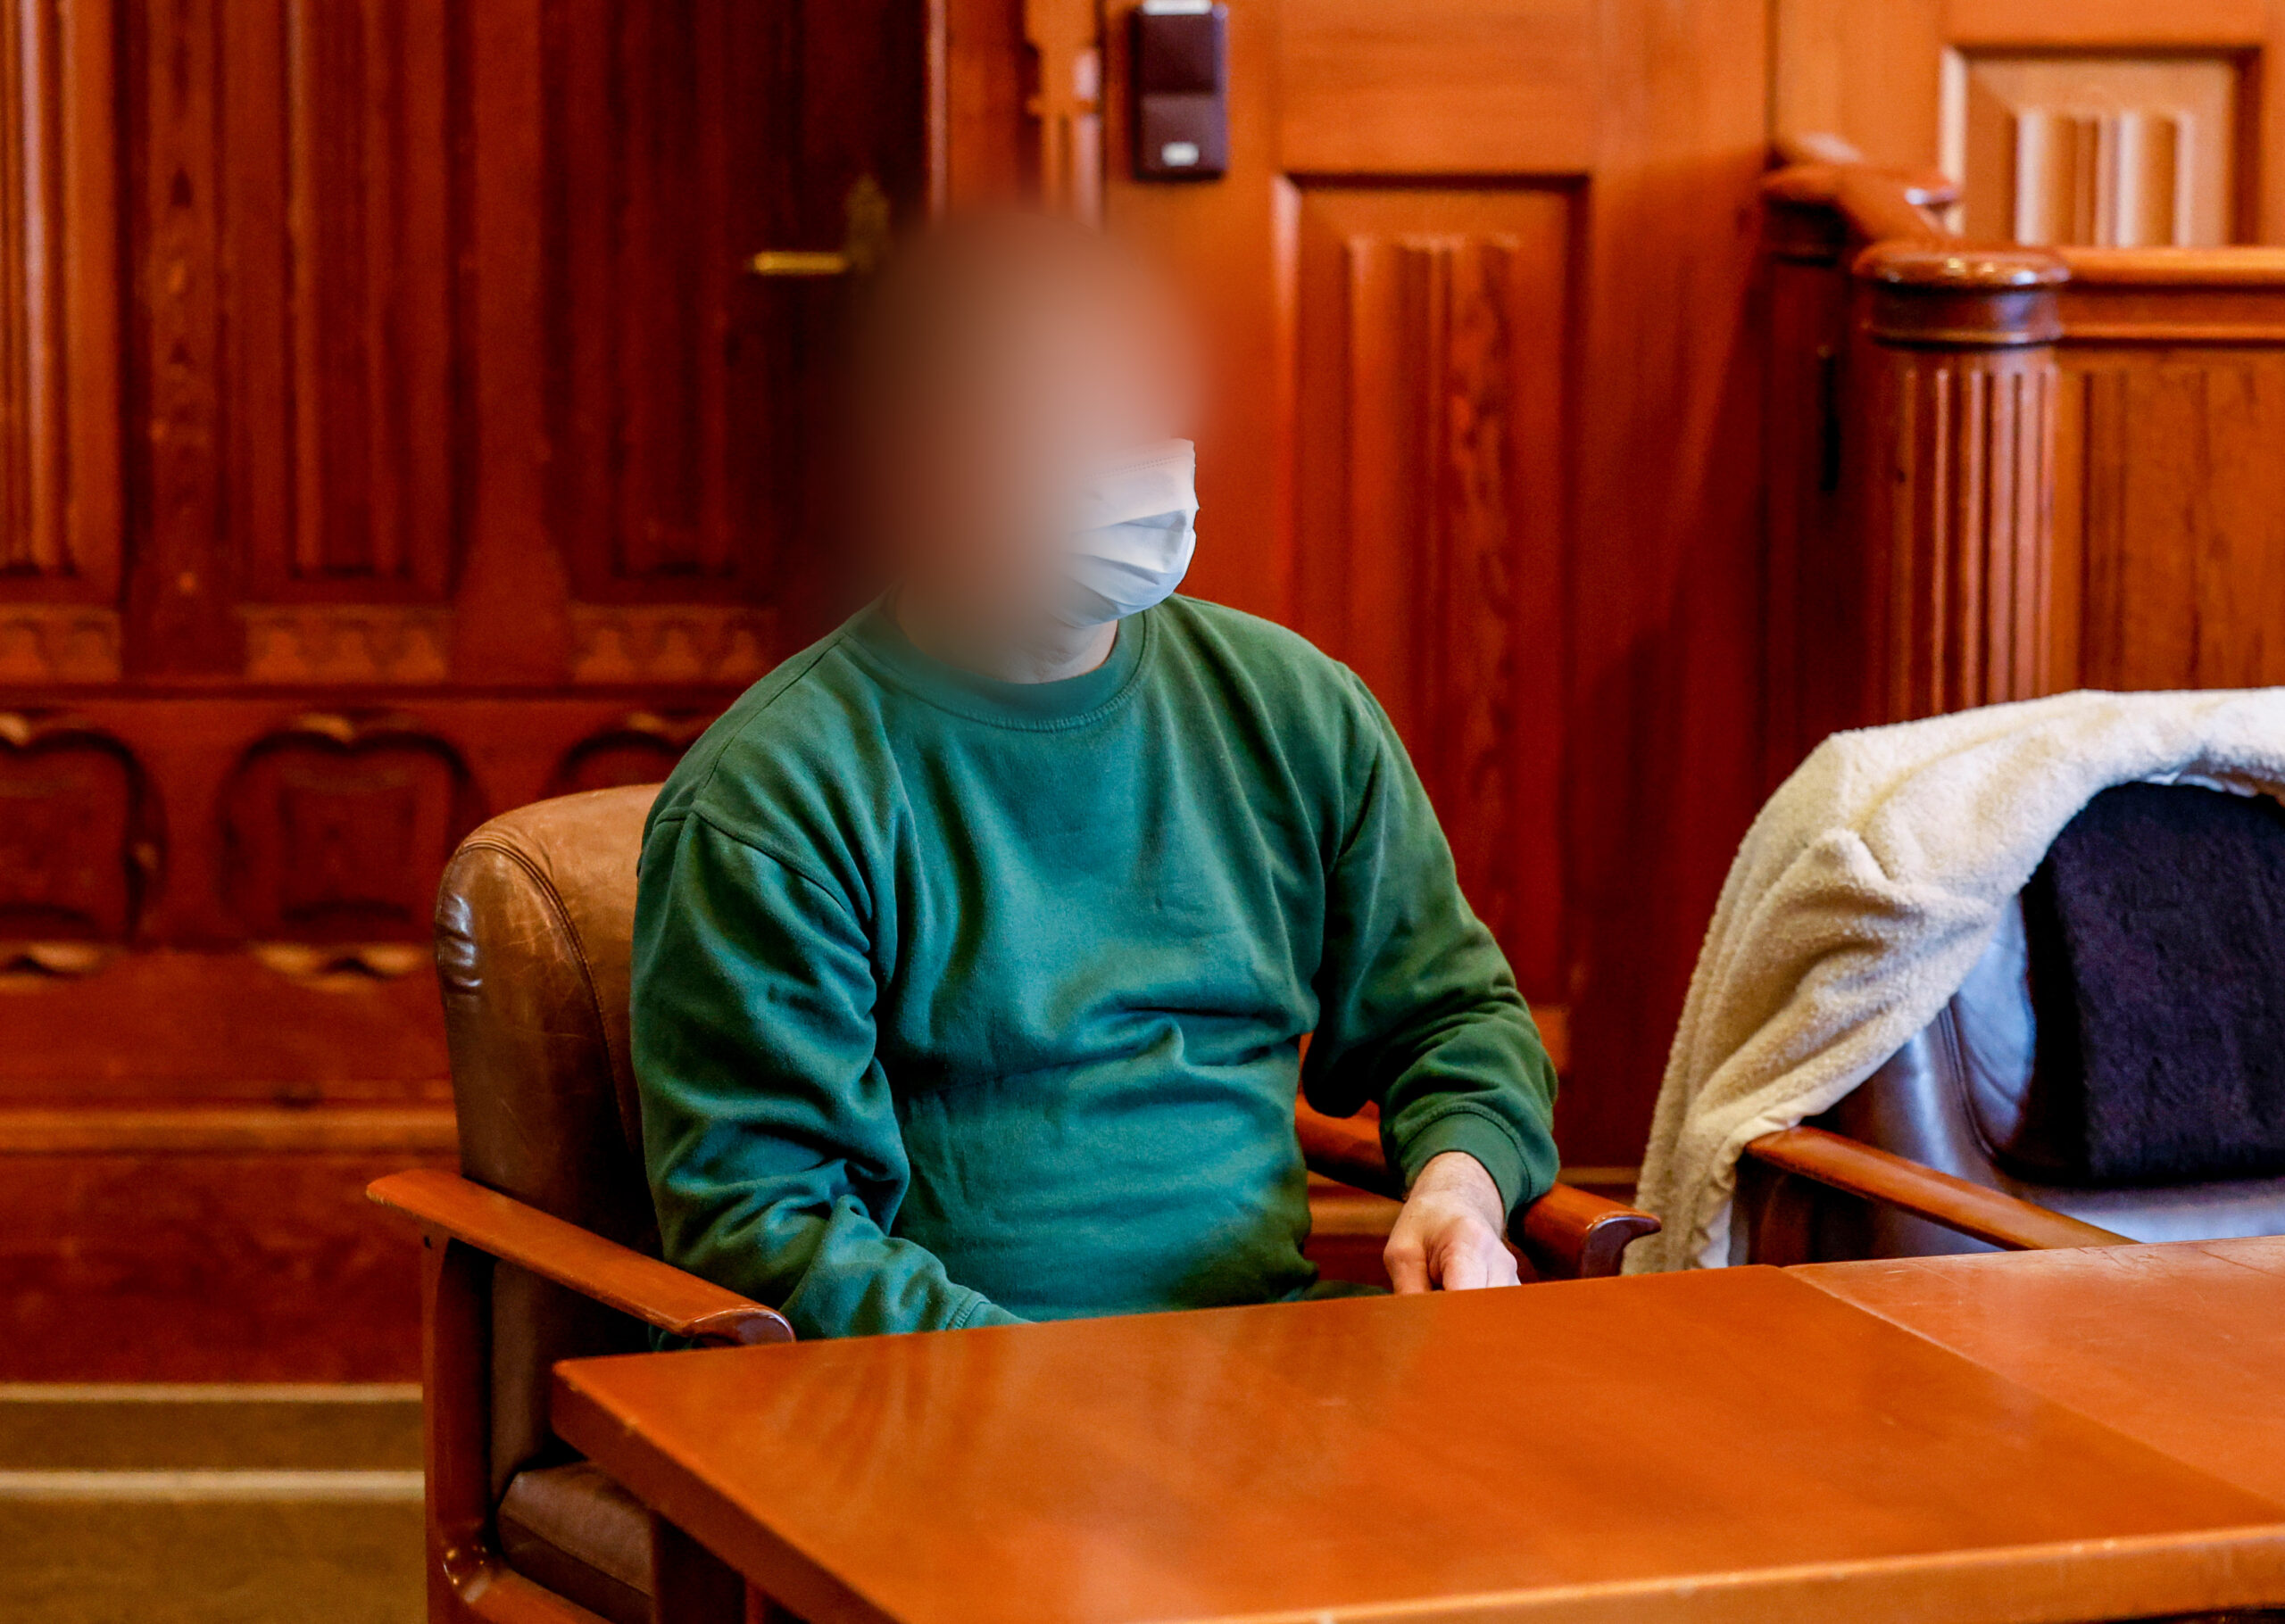 Der Vater, der 2016 auf Sylt sein Baby getötet haben soll, wartet im Gerichtssaal auf den Beginn der Verhandlung.